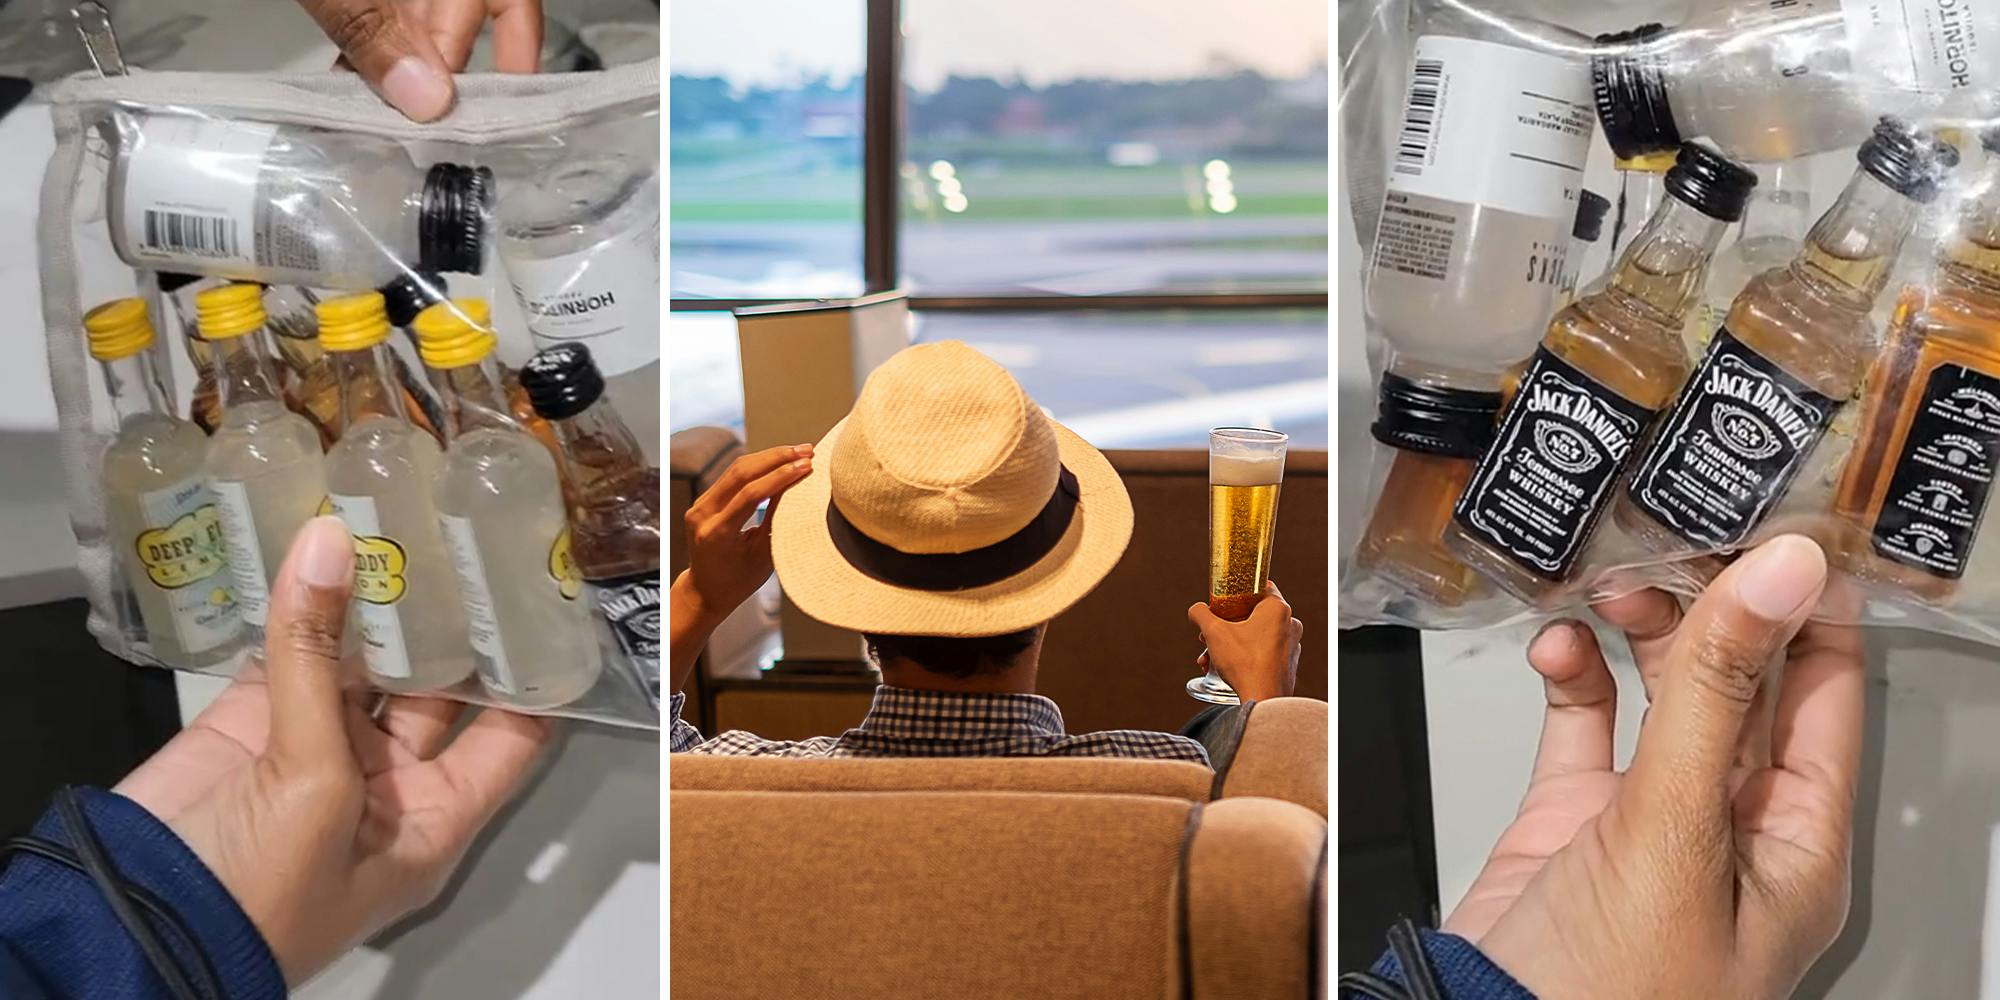 TikToker's travel hack for sneaking extra bag on flight